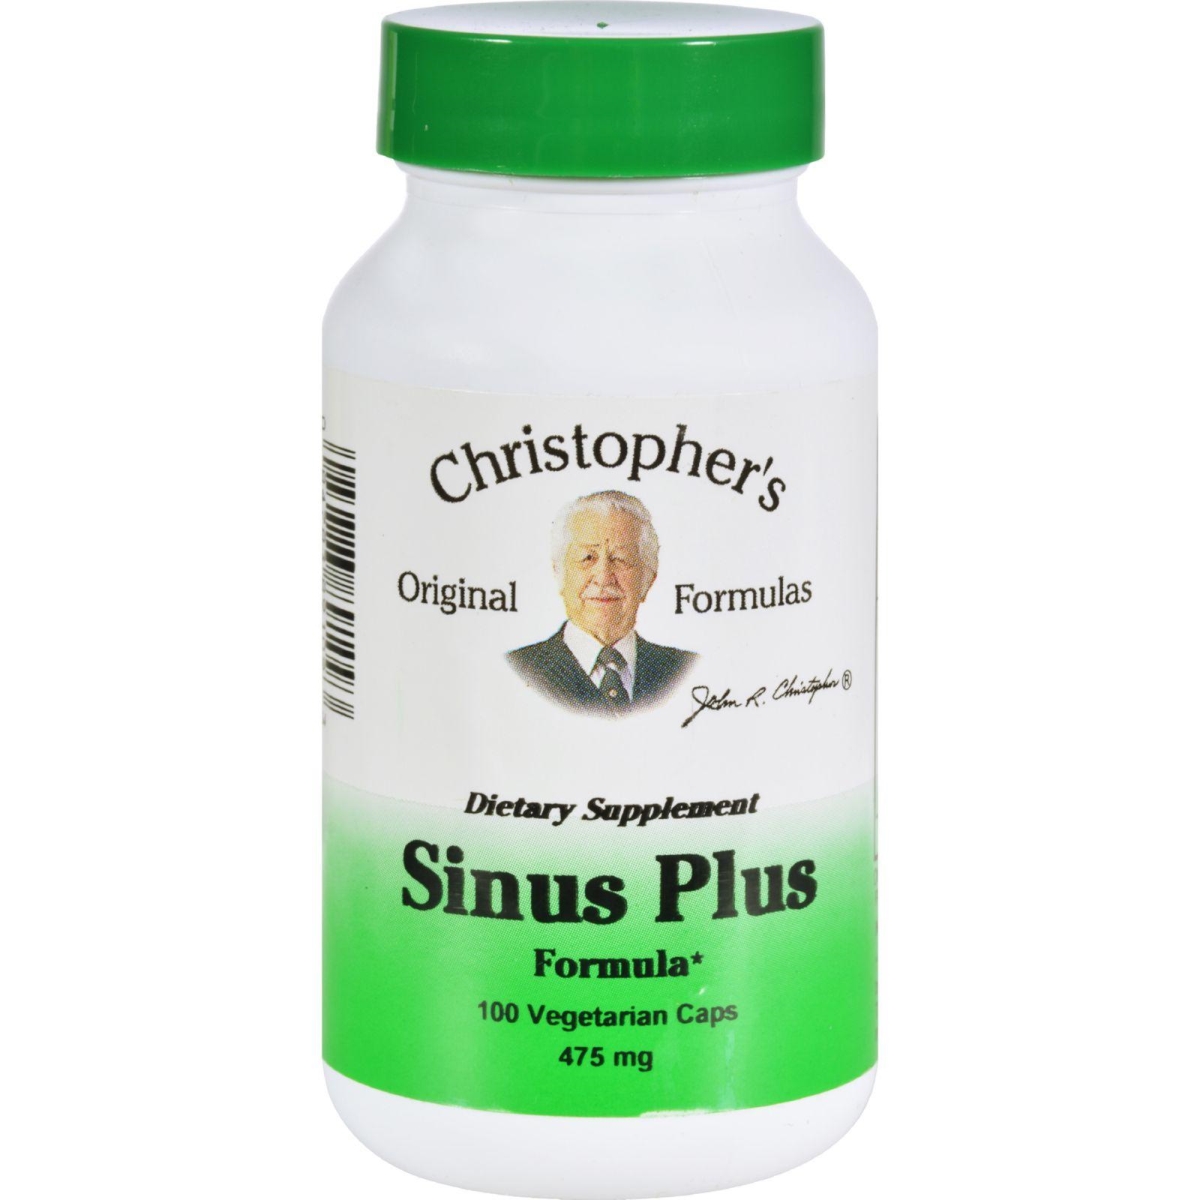 Hg0413757 475 Mg Original Formulas Sinus Plus Formula, 100 Vegetarian Capsules